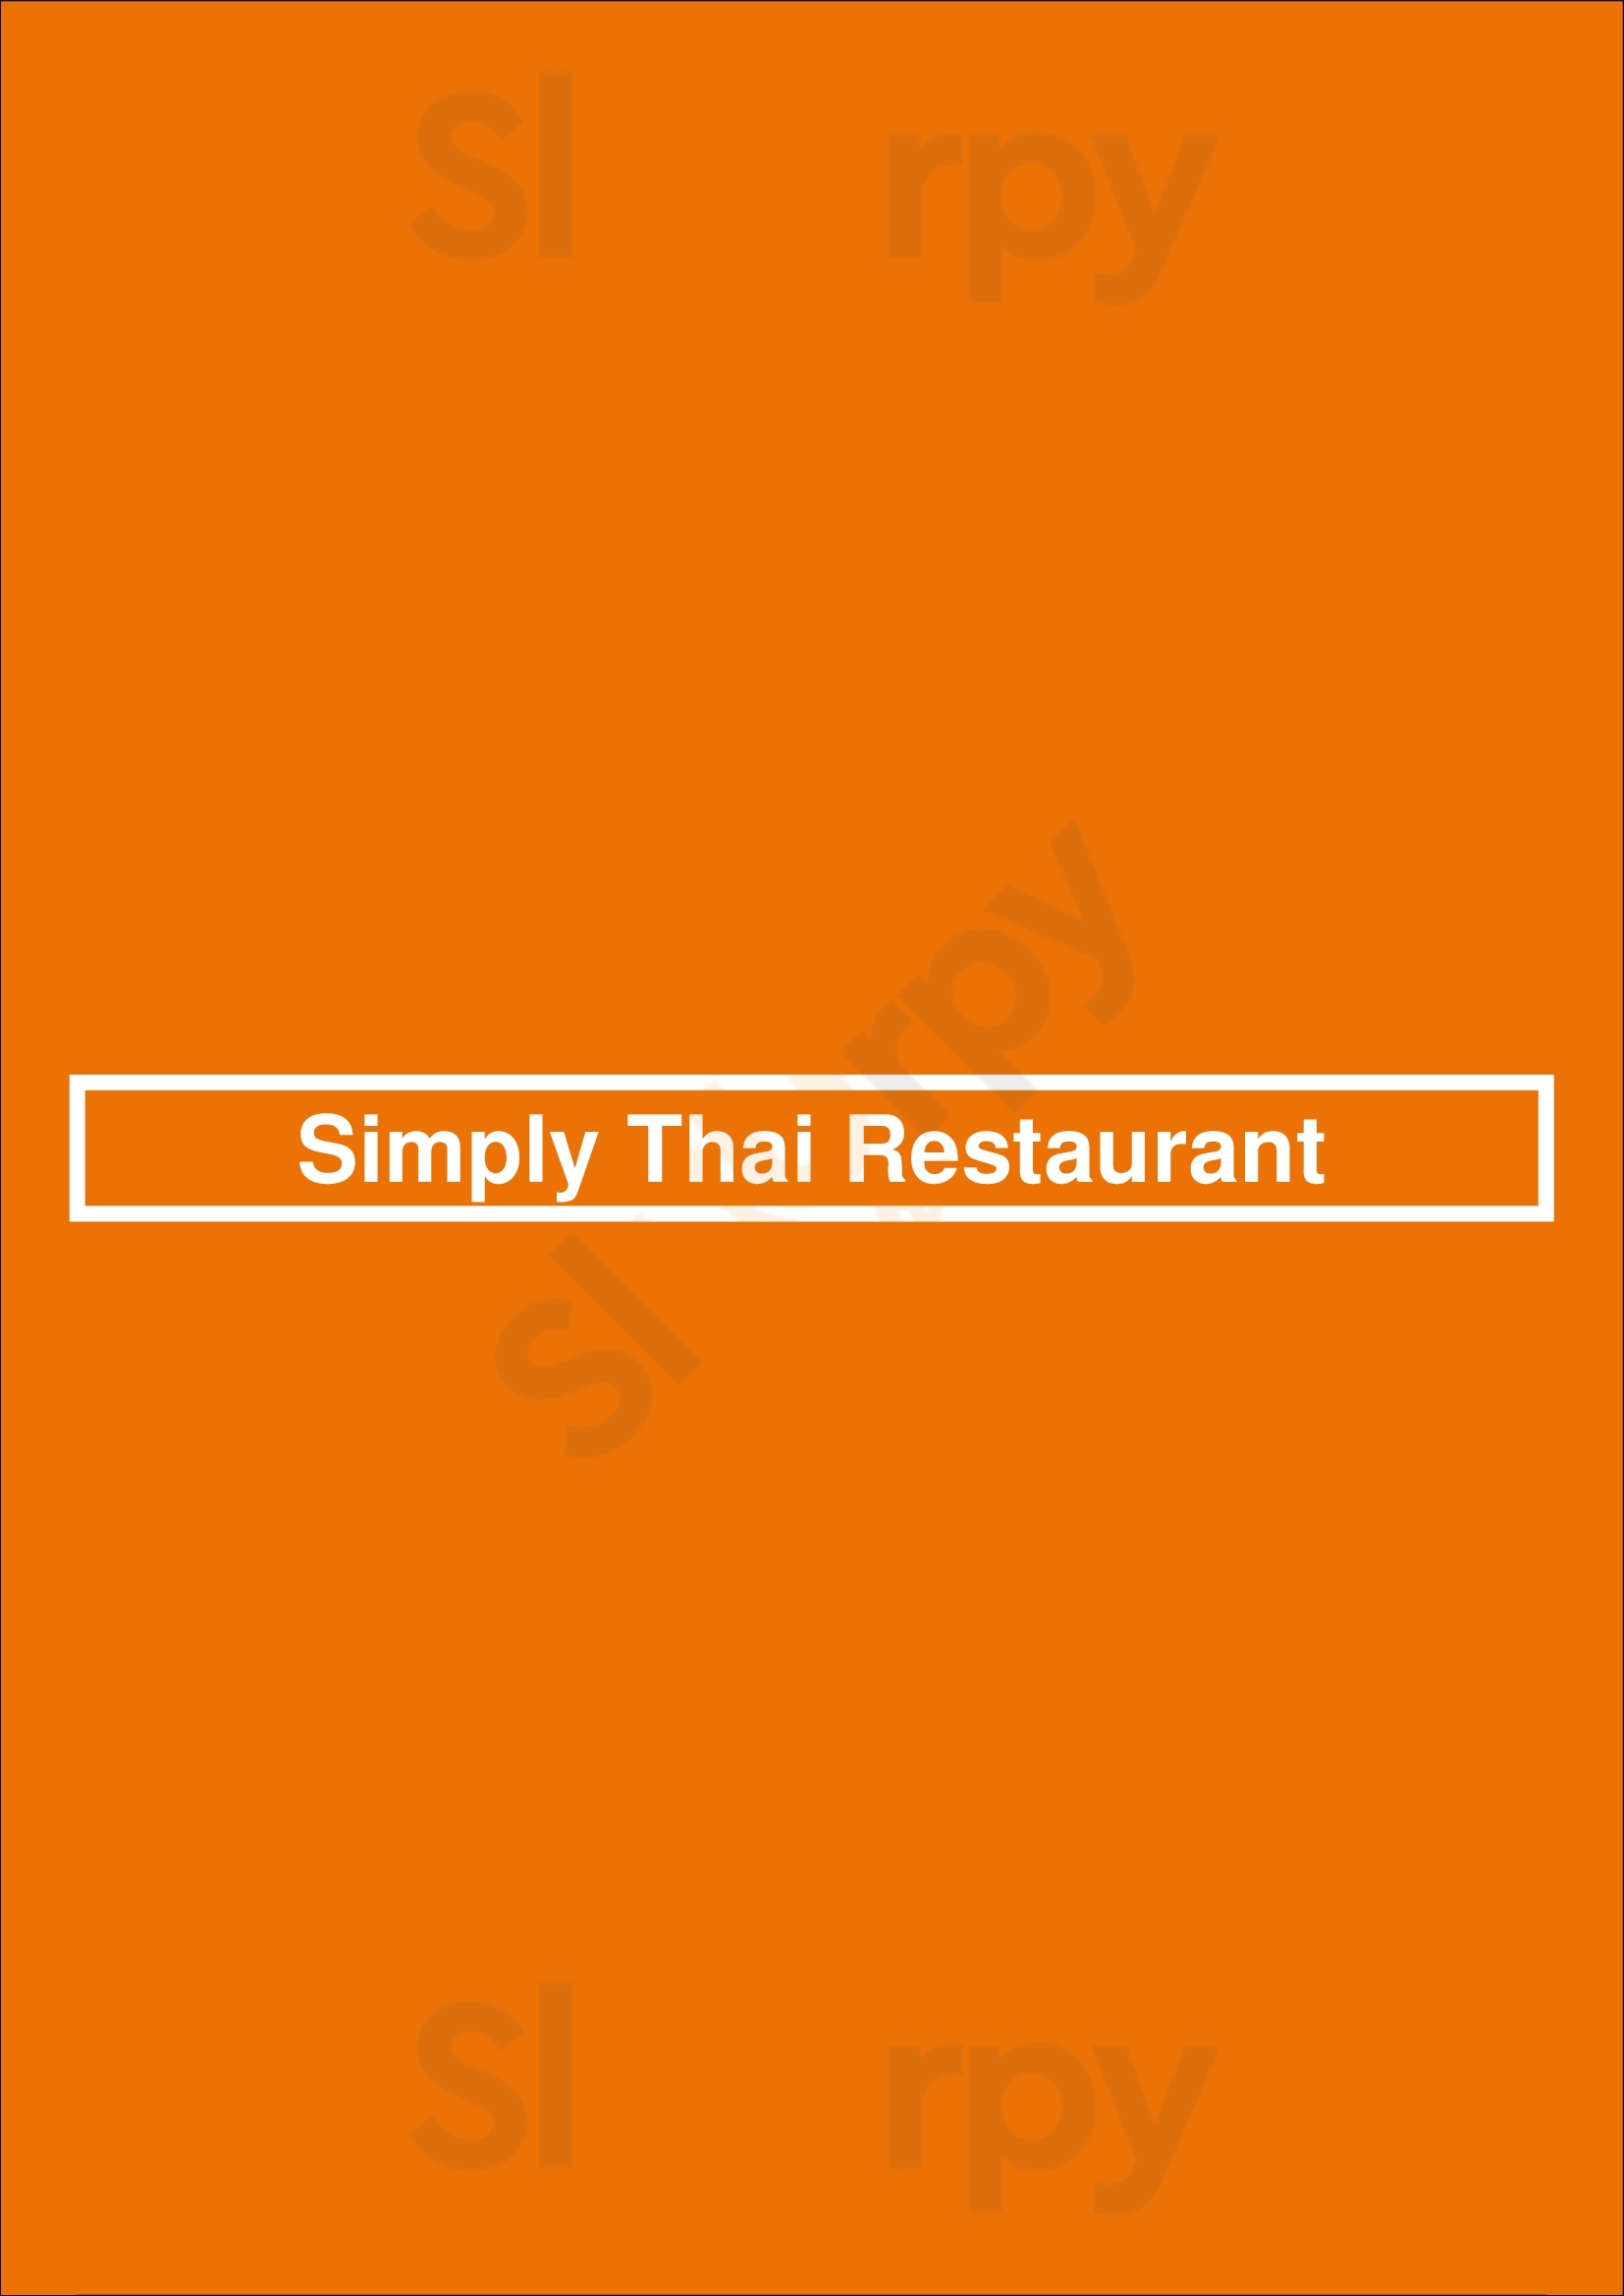 Simply Thai Restaurant Den Haag Menu - 1